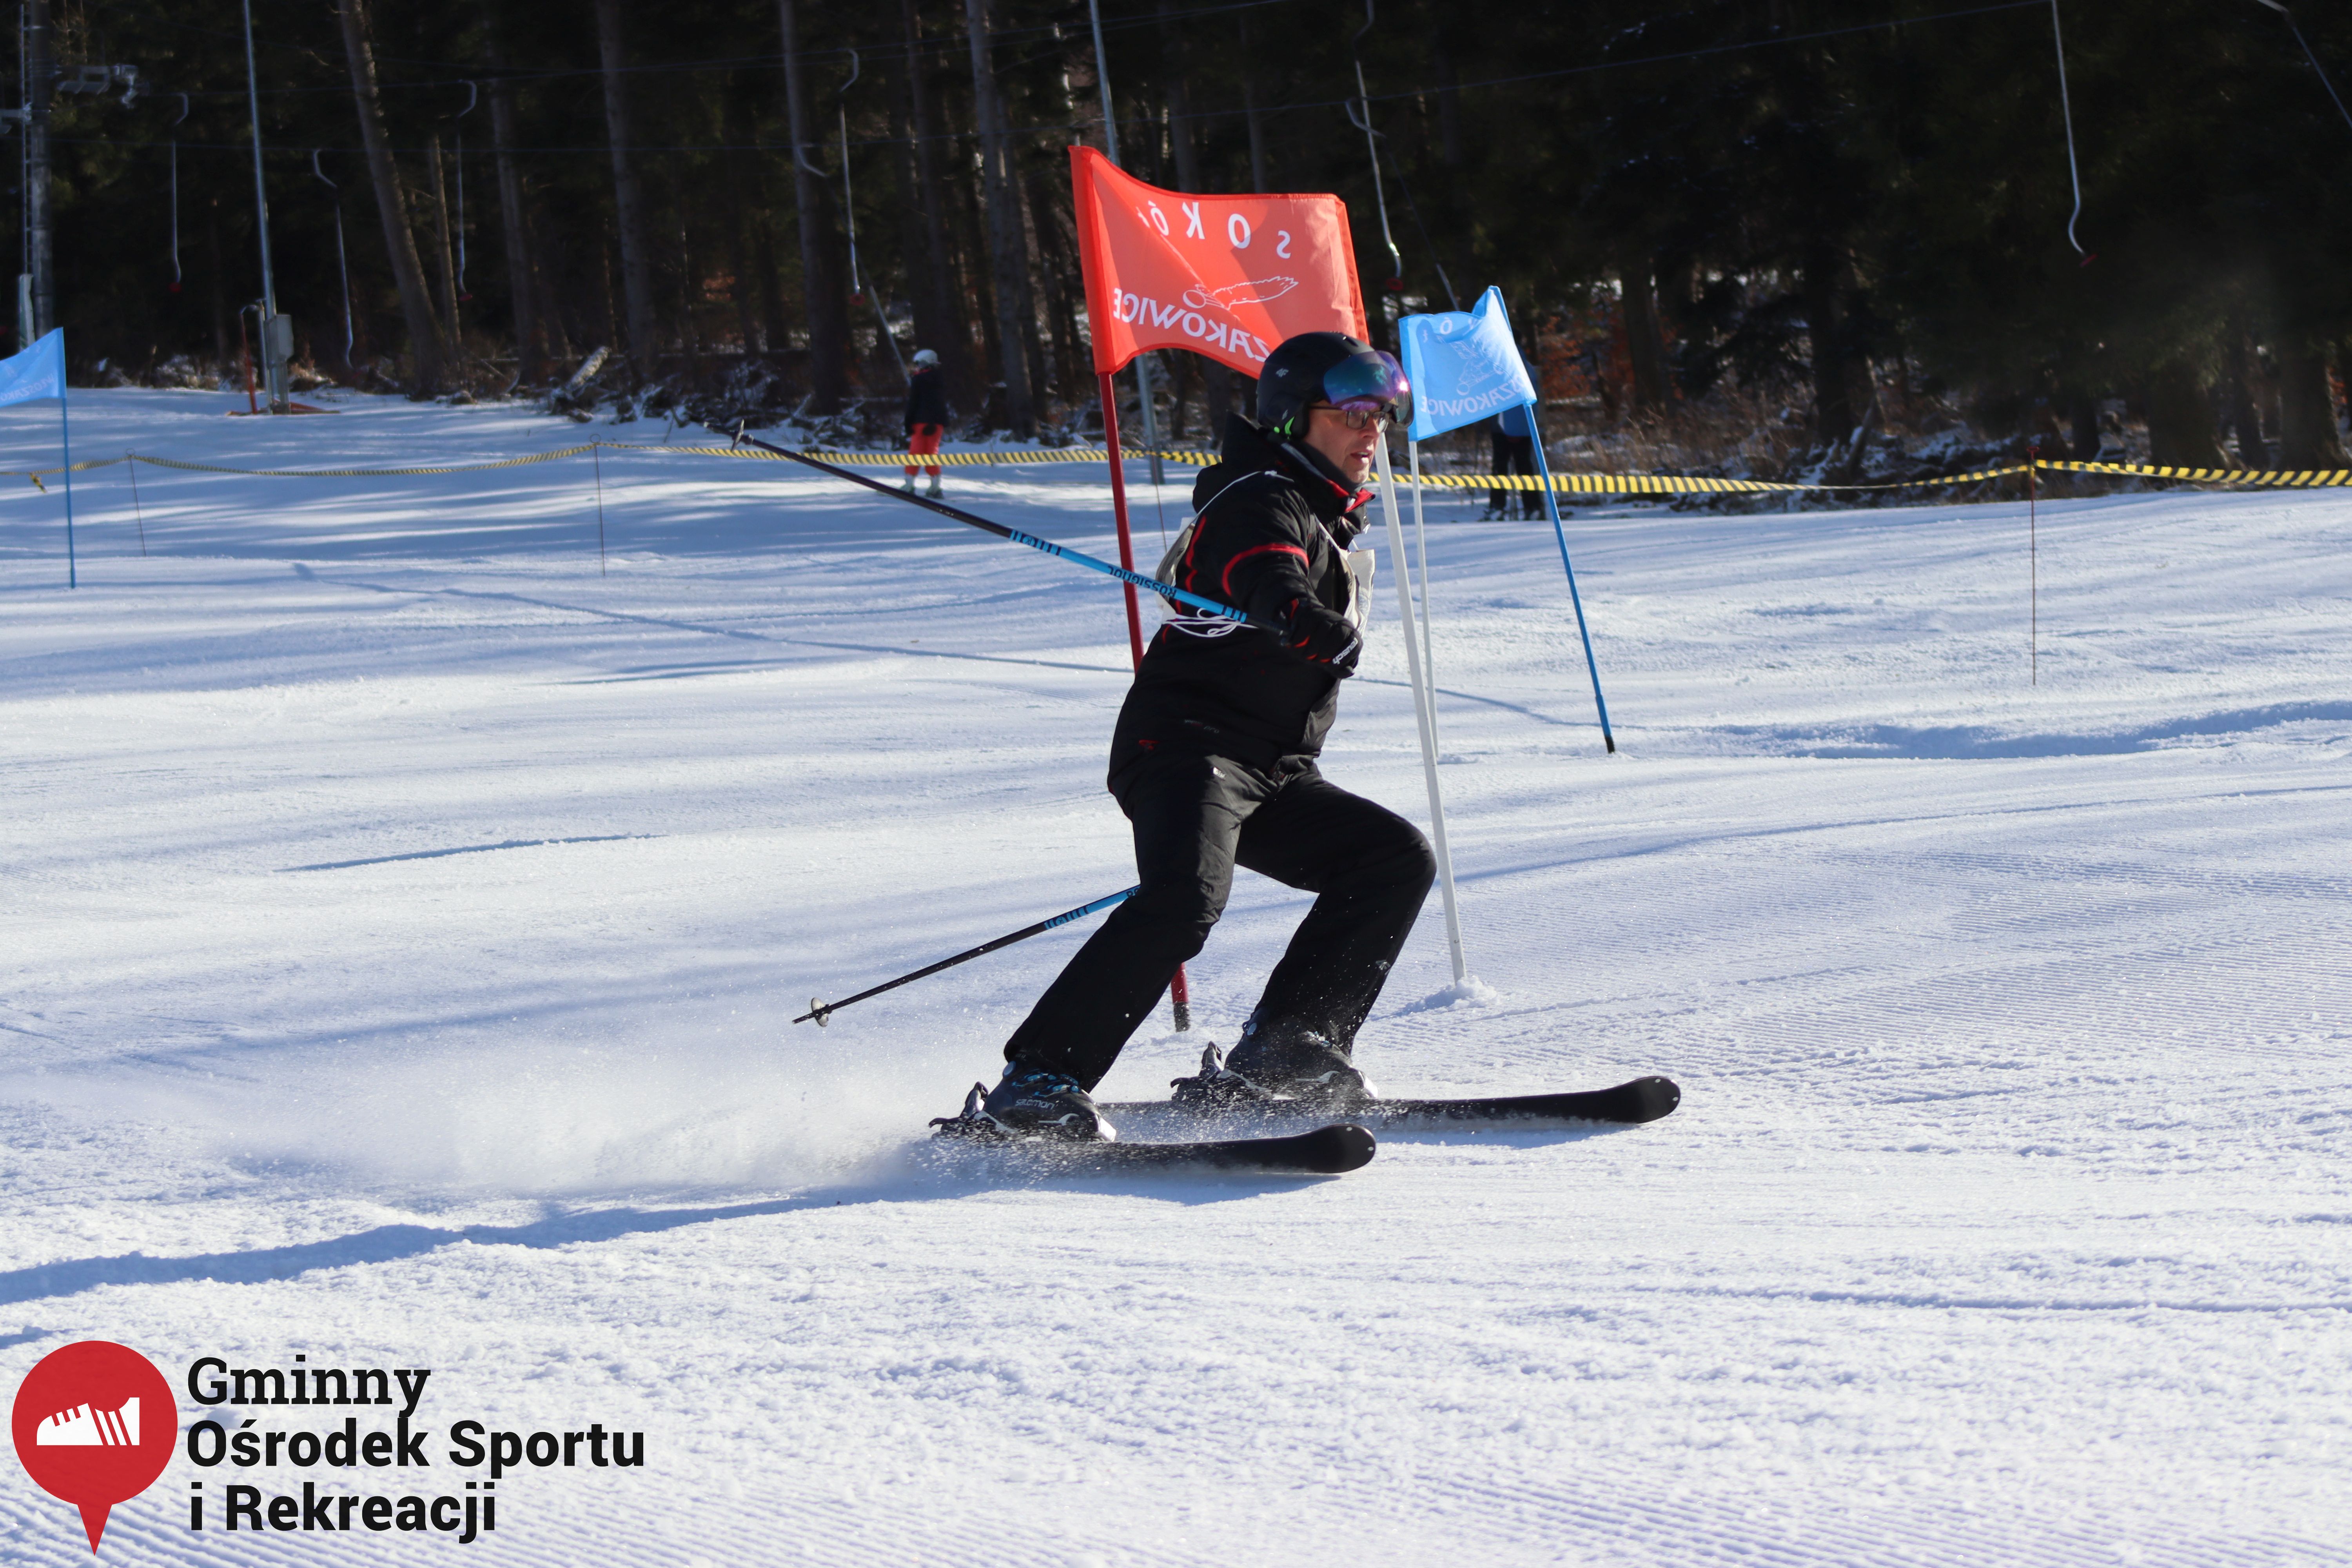 2022.02.12 - 18. Mistrzostwa Gminy Woszakowice w narciarstwie072.jpg - 2,19 MB